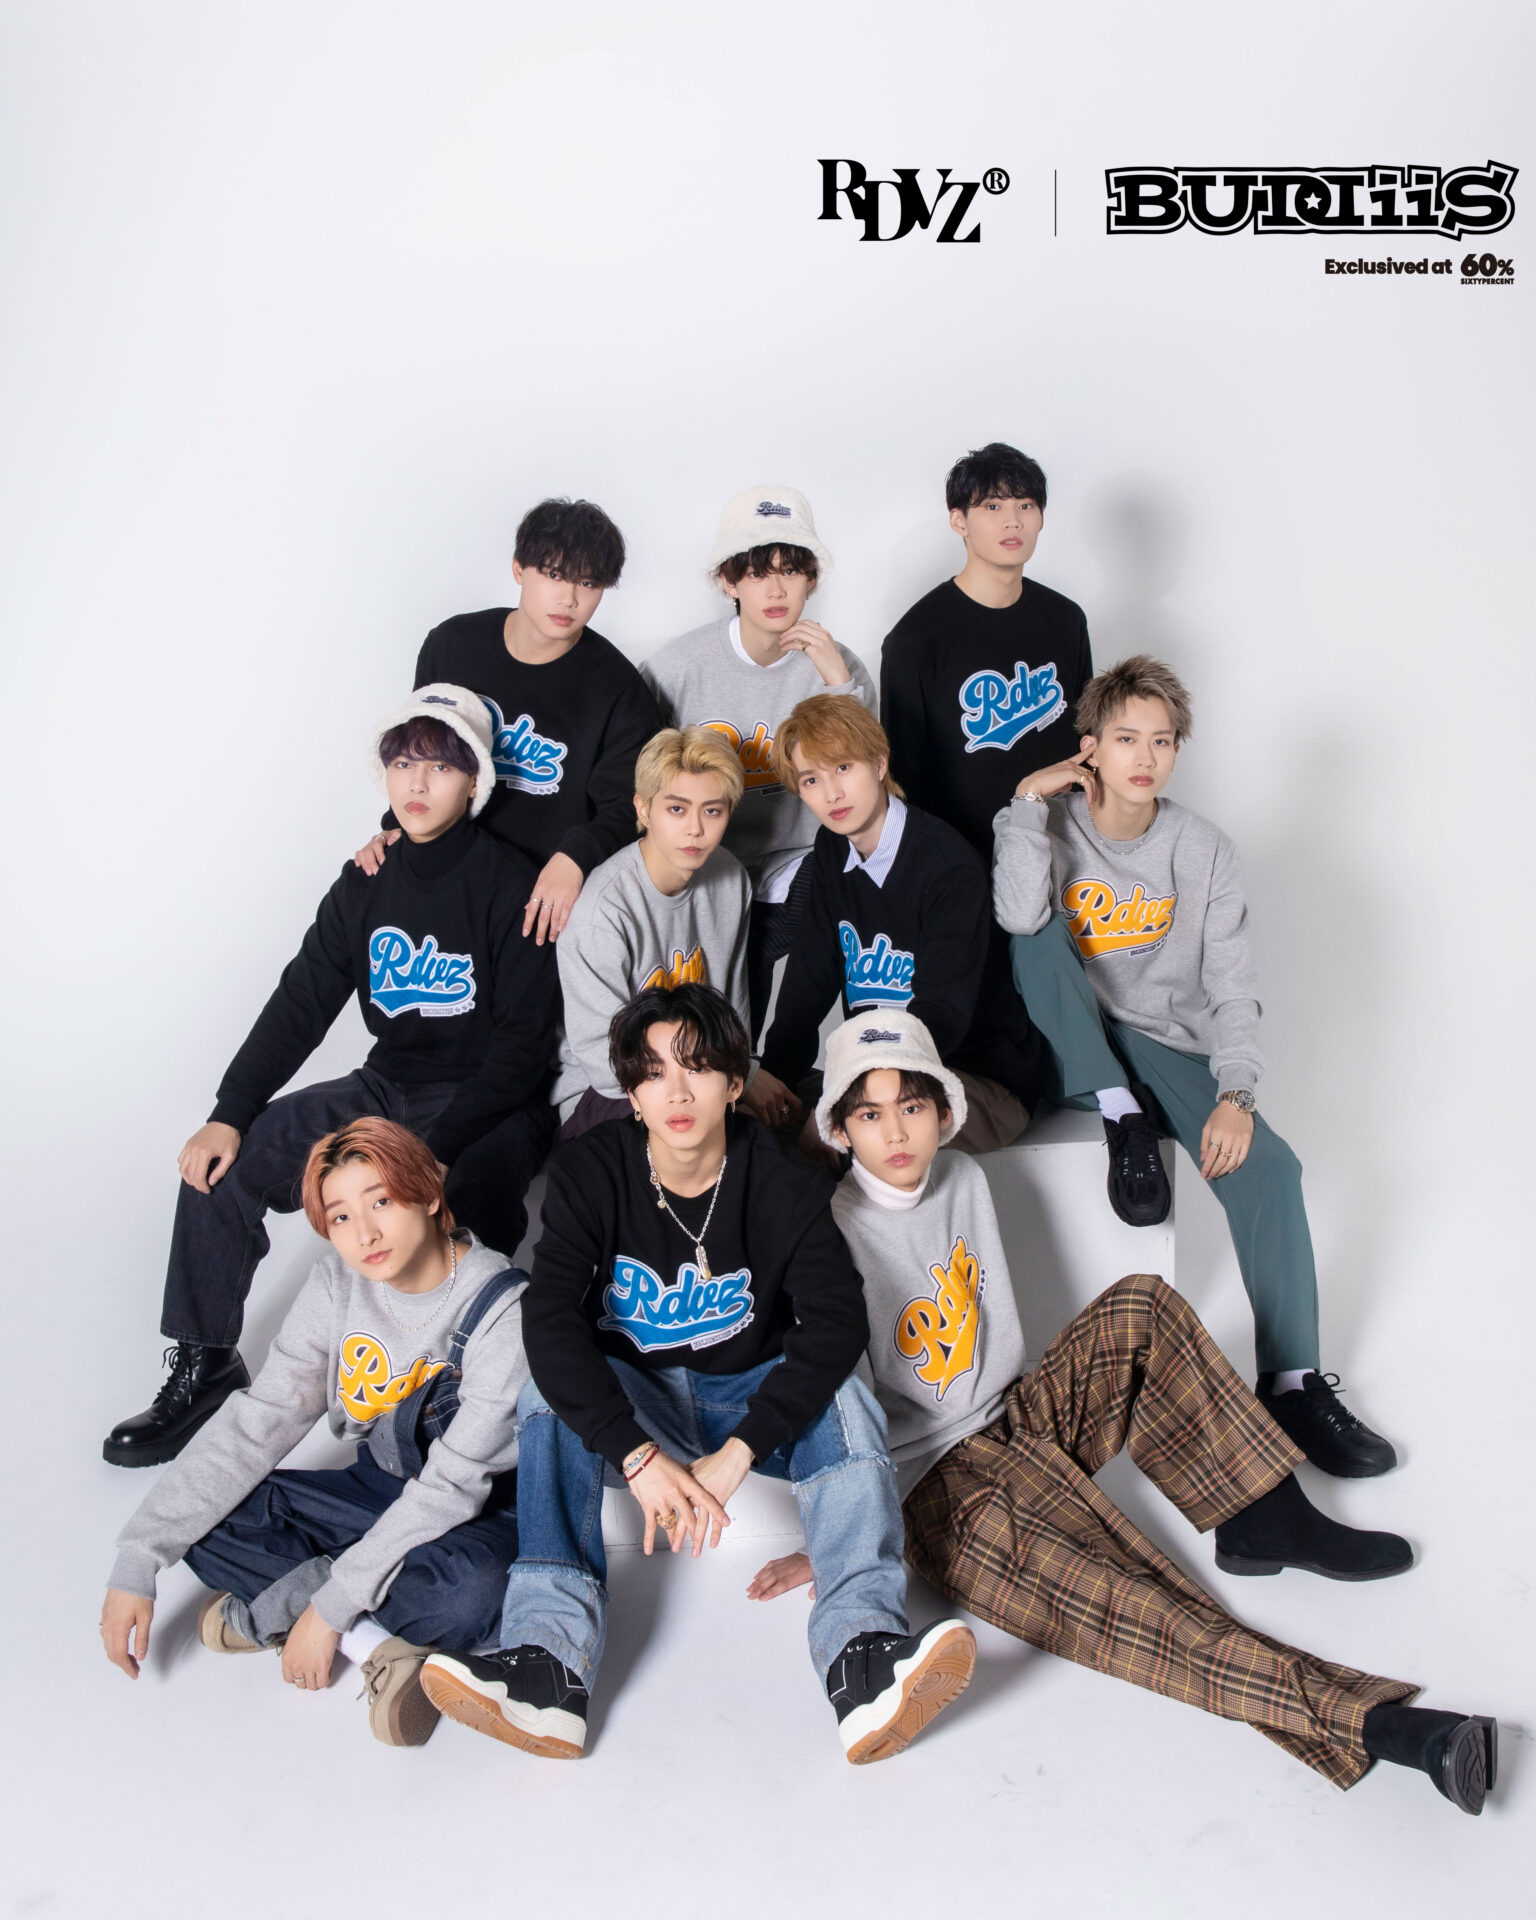 10人組ダンス＆ボーカルグループ『BUDDiiS』と話題の韓国ストリートブランド『RDVZ』のスペシャルコラボアイテムが「60%」で本日発売